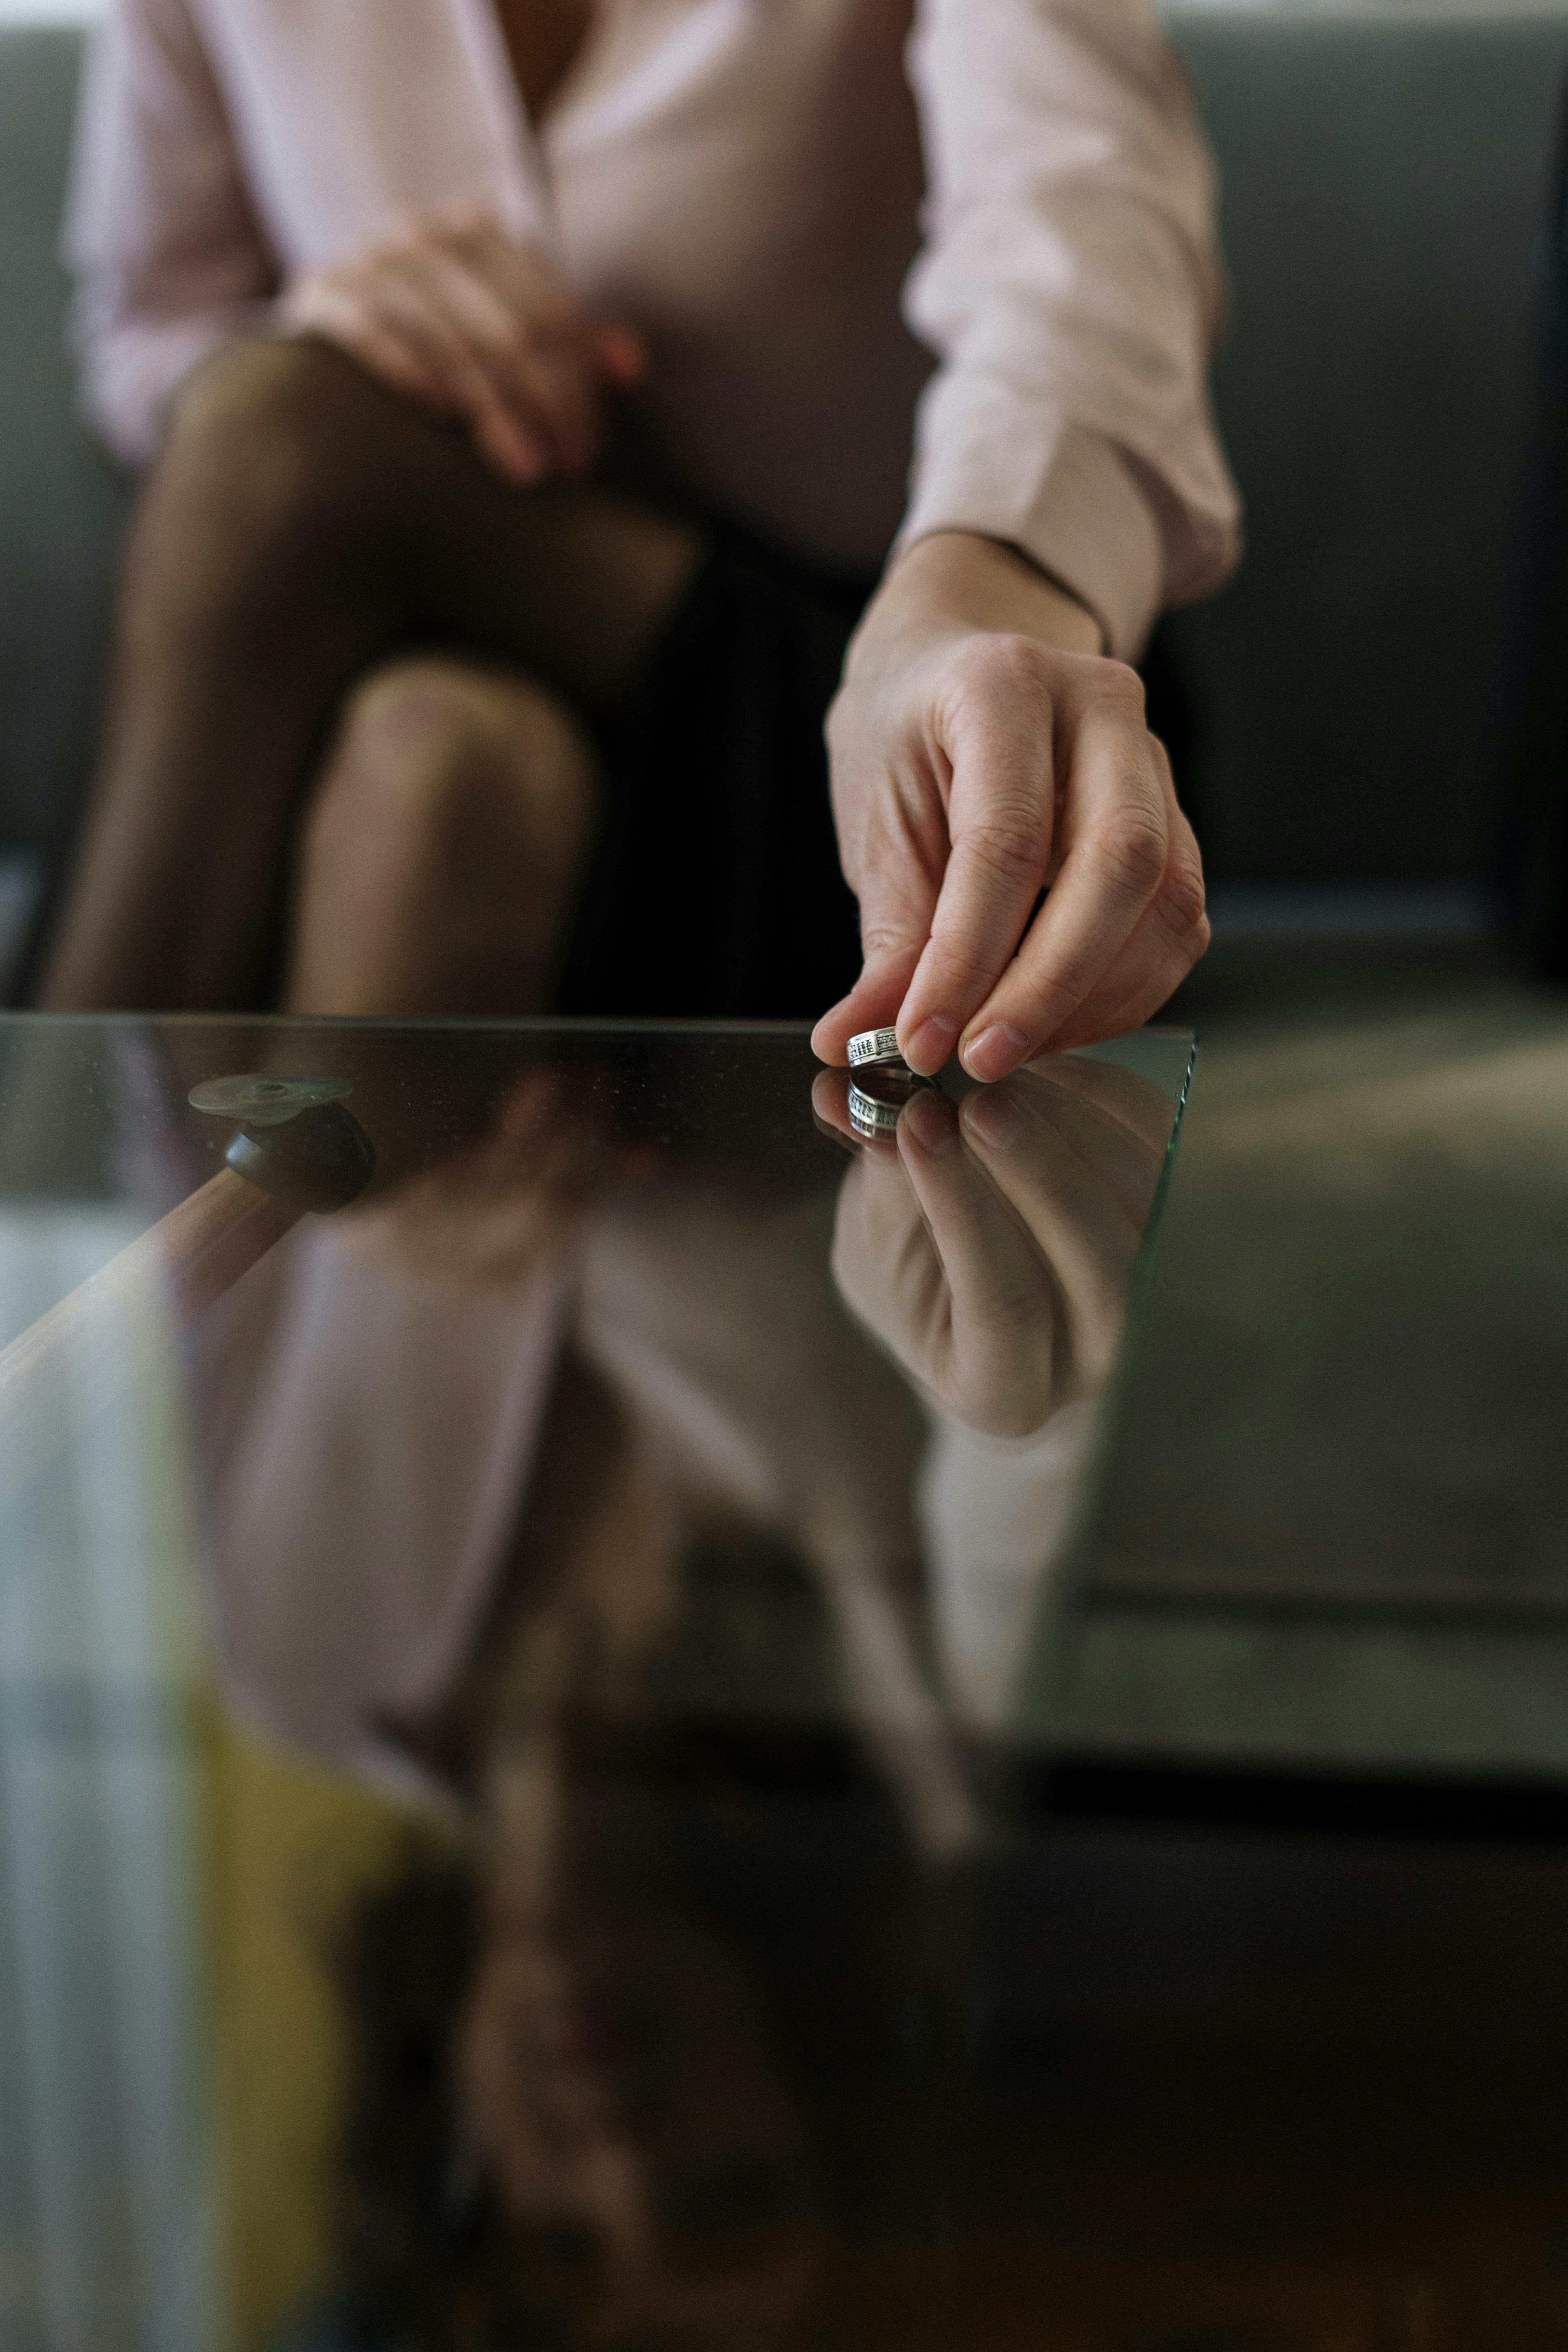 Mujer dejando el anillo sobre la mesa | Fuente: Pexels